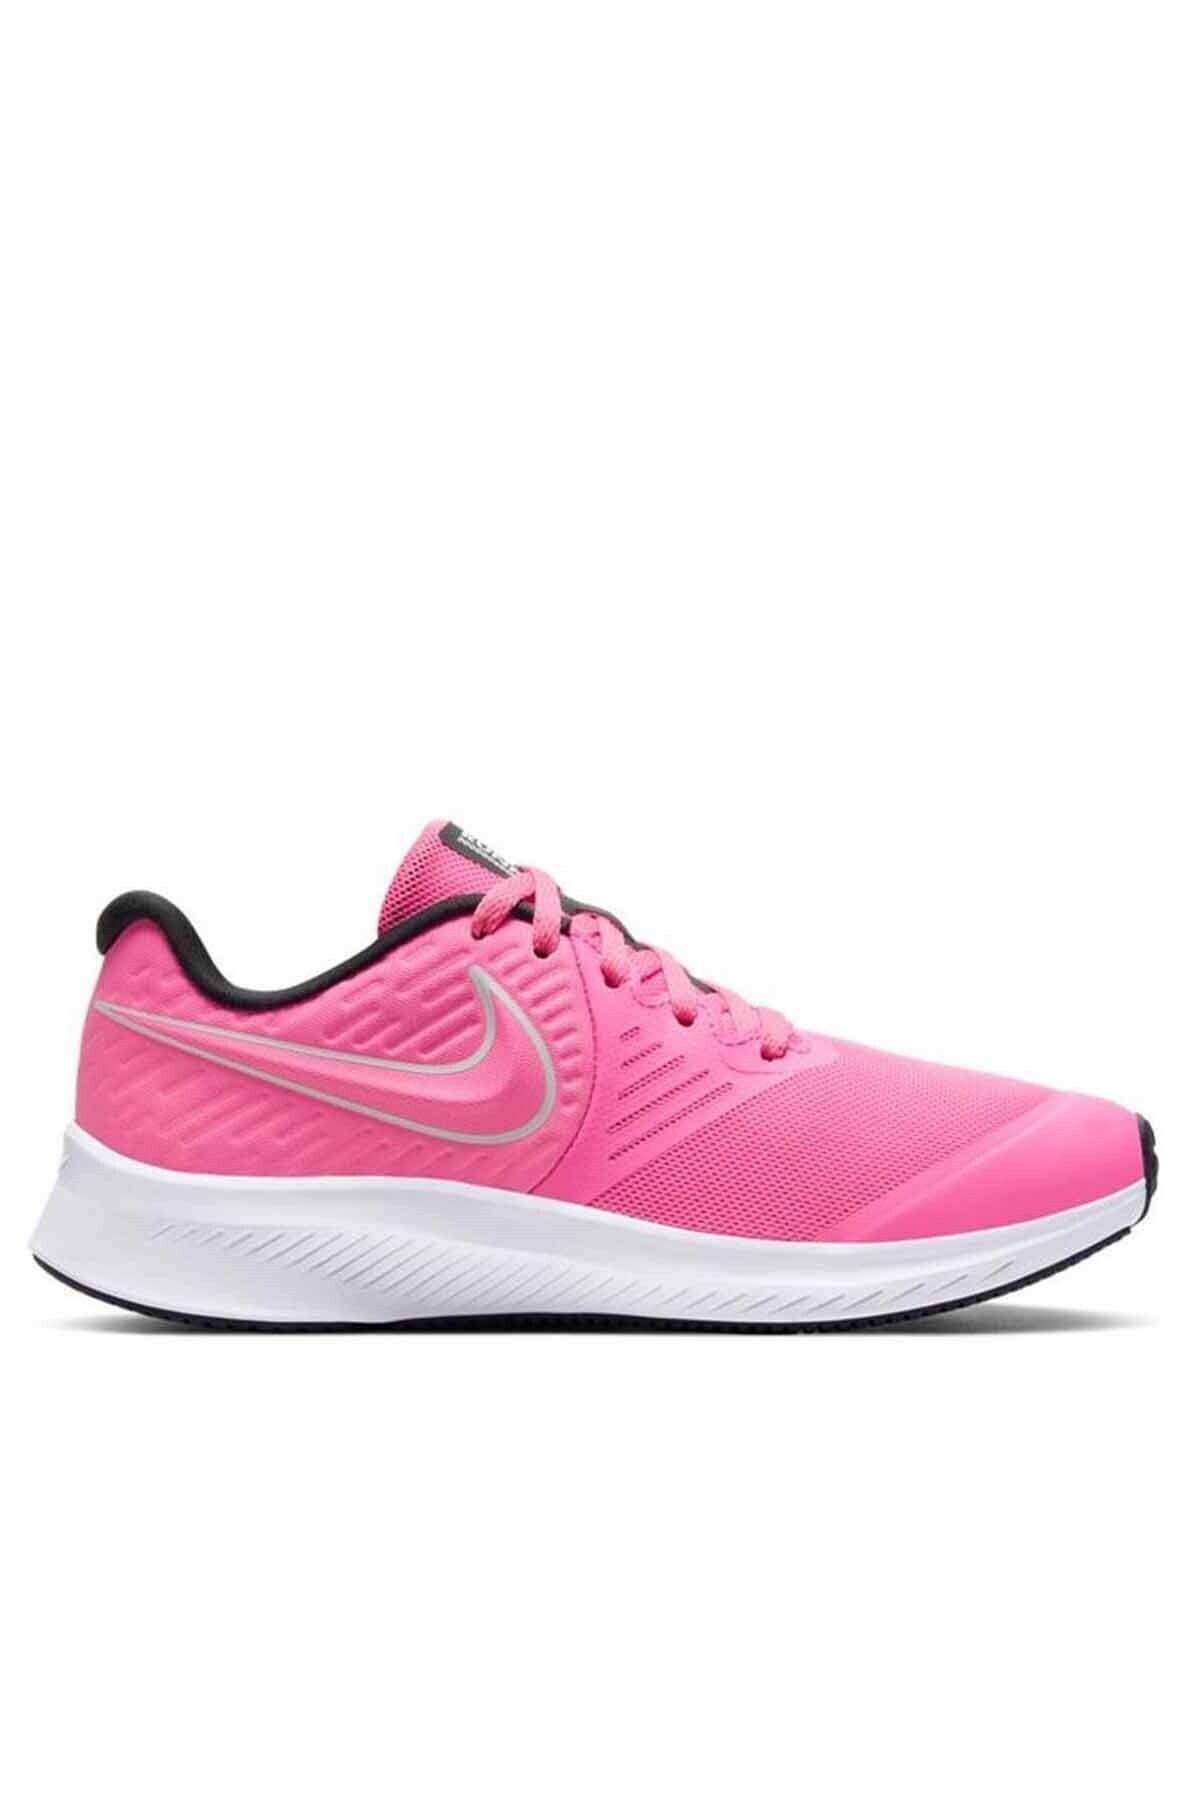 کفش ورزشی نایک زنانه صورتی star runner رنگ Nike